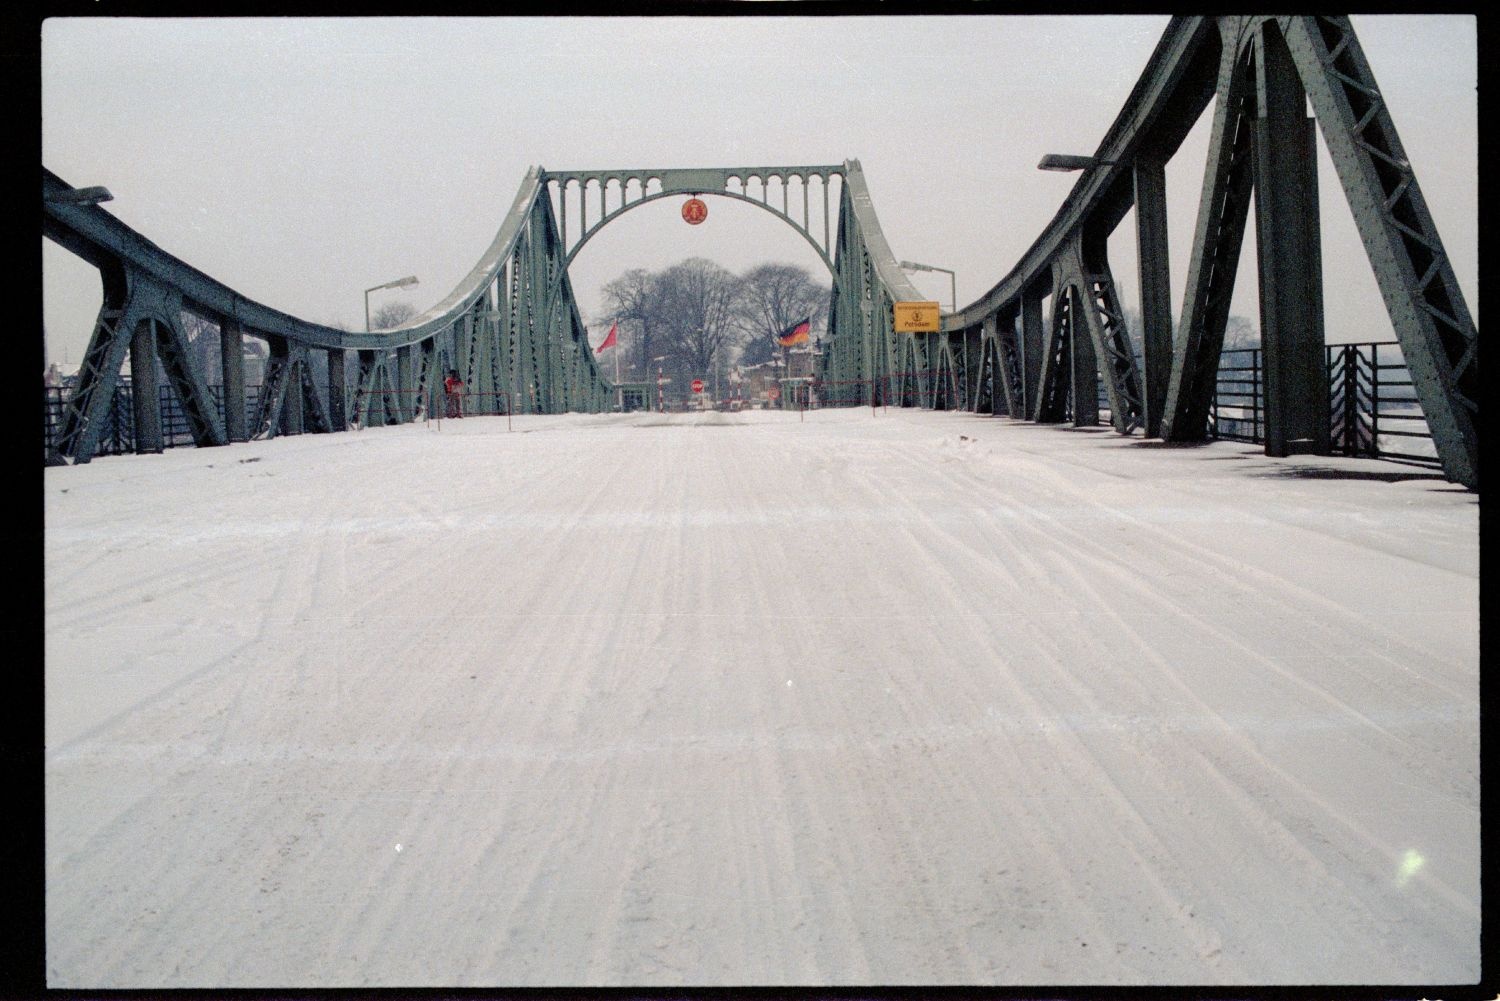 Fotografie: Agentenaustausch auf der Glienicker Brücke (AlliiertenMuseum/U.S. Army Photograph Public Domain Mark)